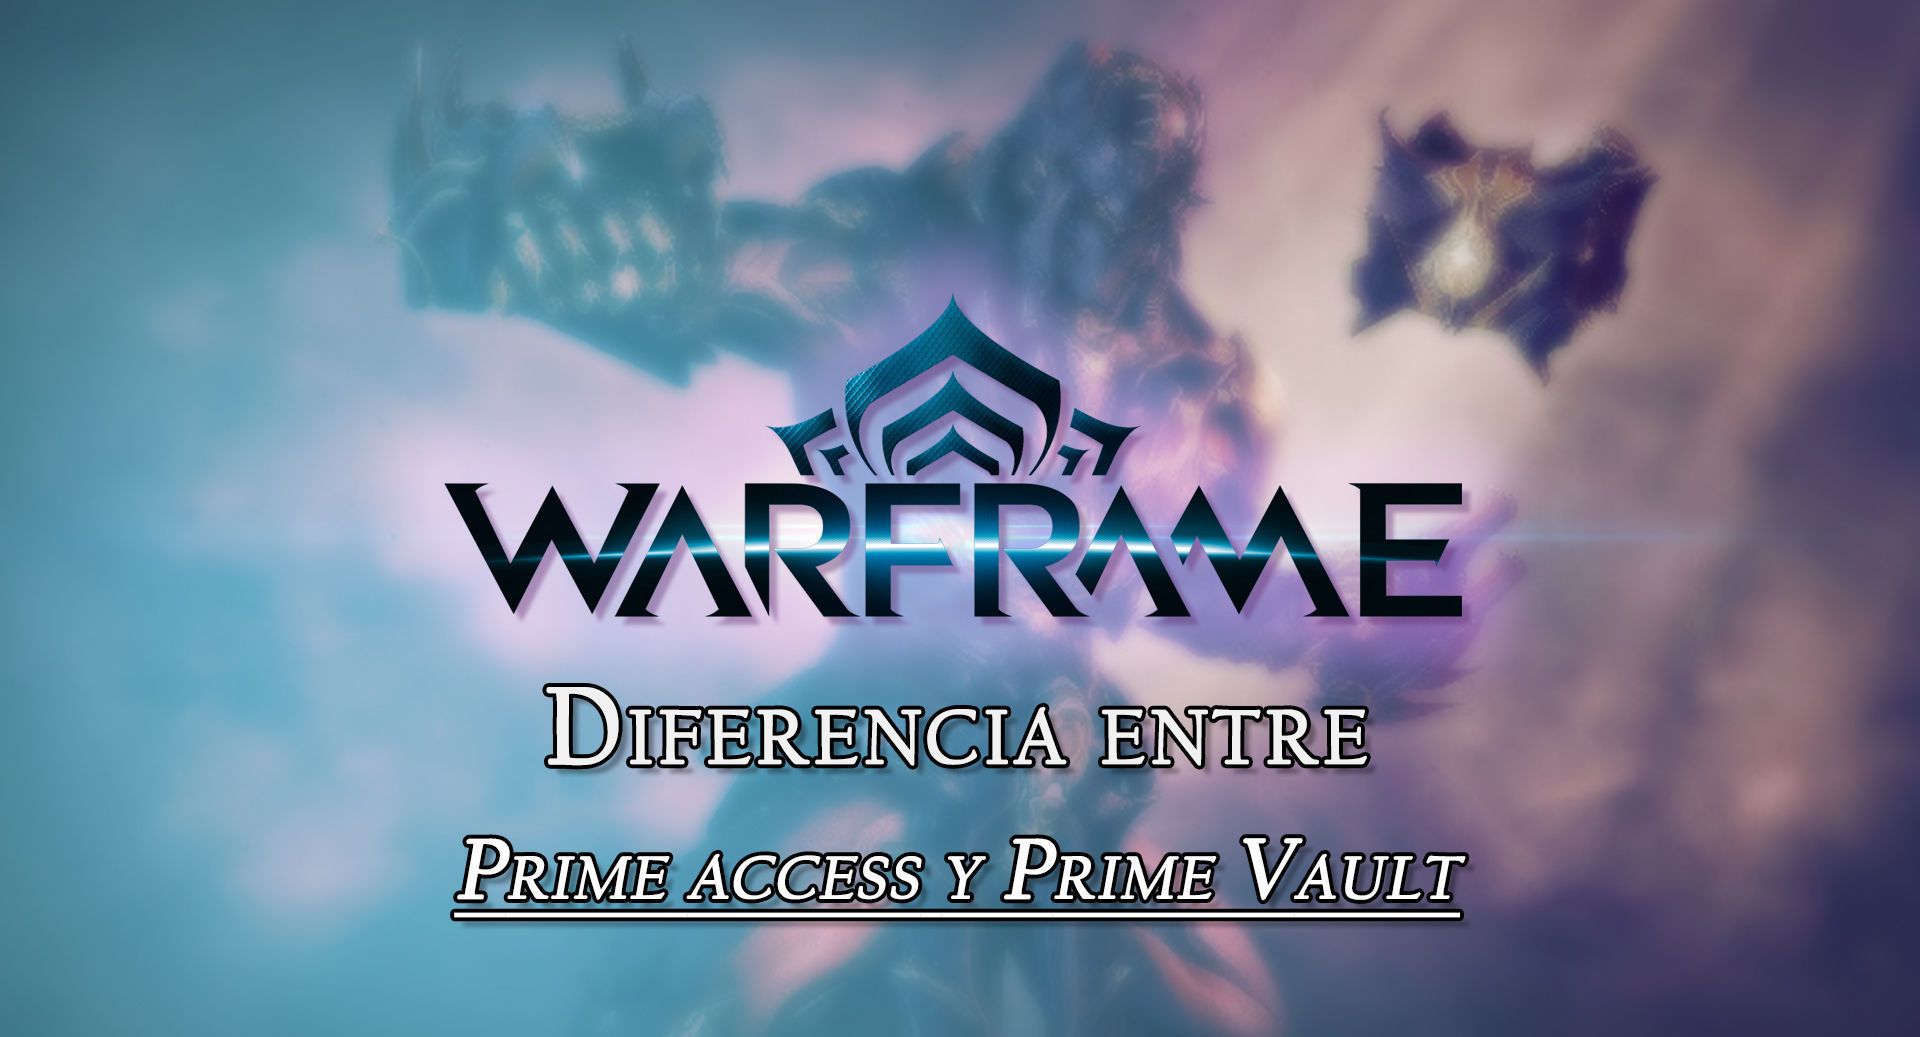 Warframe: Cul es la diferencia entre Prime Access y Prime Vault? - Warframe